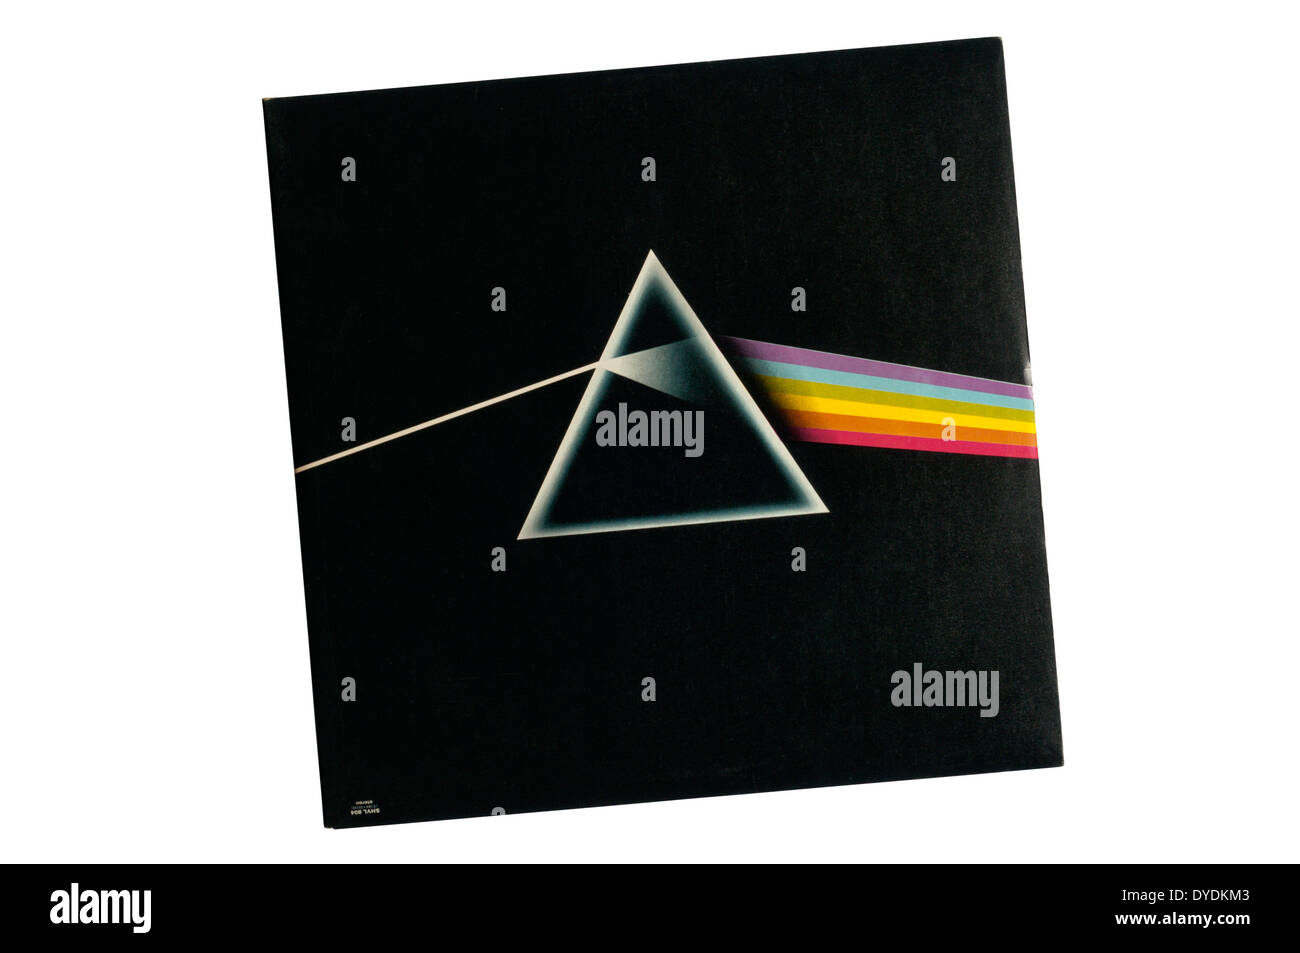 Il lato oscuro della Luna era l'ottavo album in studio di inglese prog rock band Pink Floyd, rilasciato nel 1973. Coperchio da Hipgnosis. Foto Stock